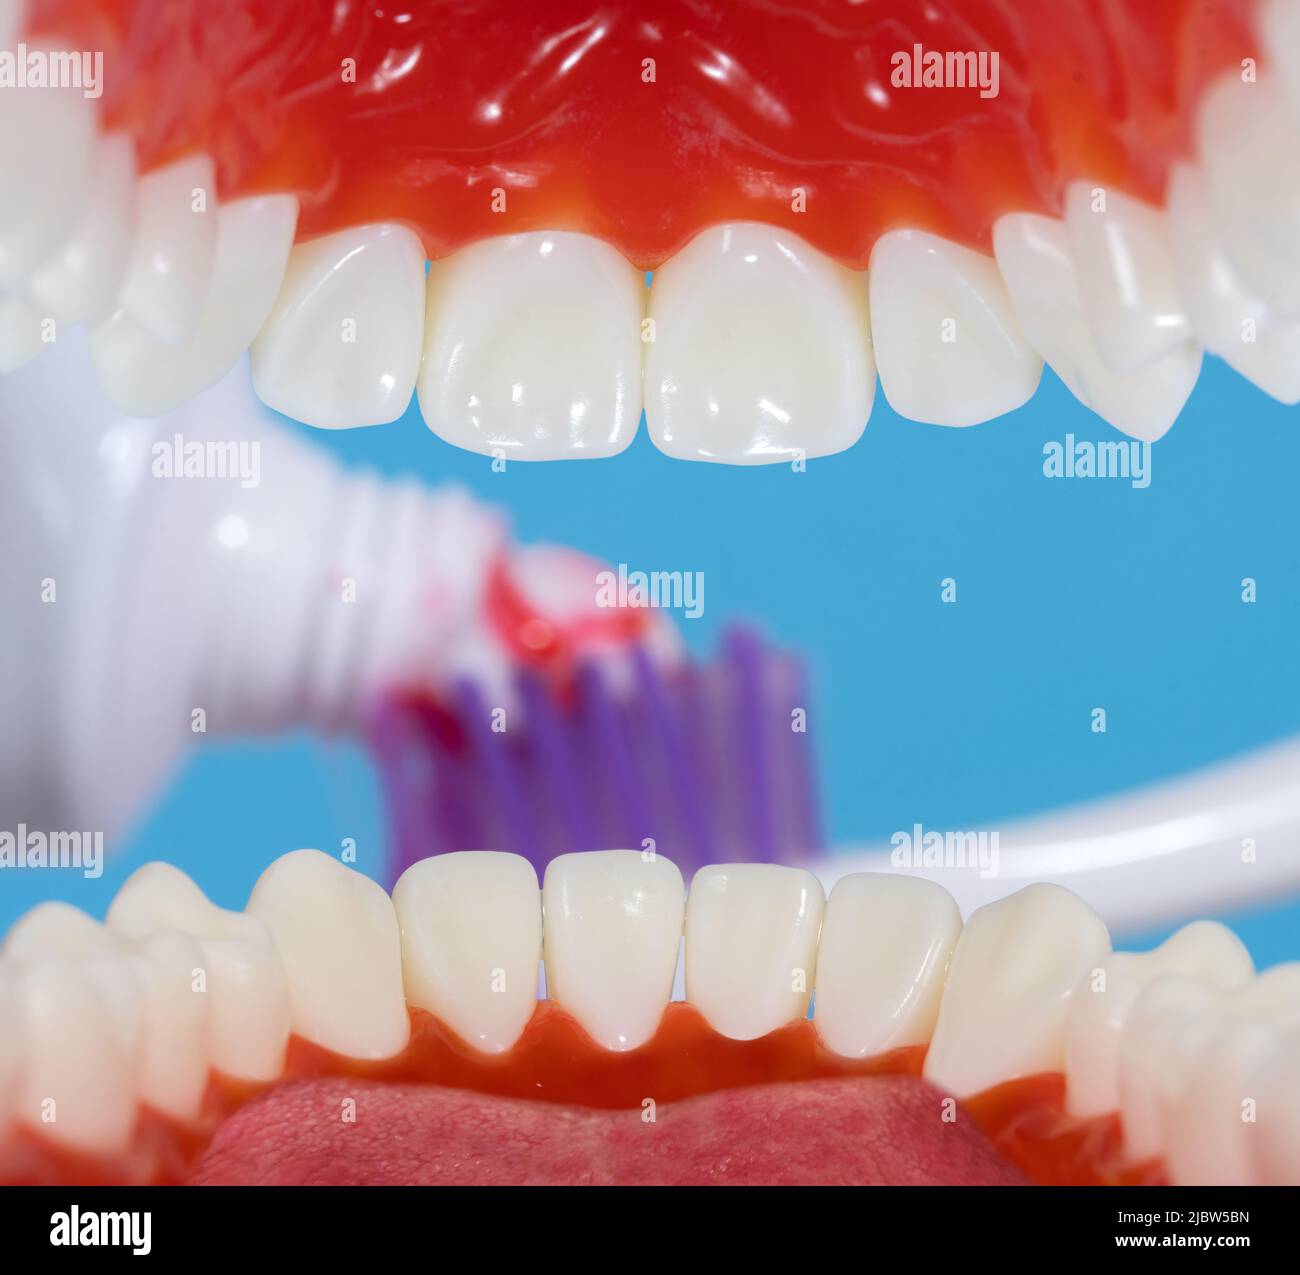 Une vue à travers la bouche sur un dentifrice avec brosse à dents Banque D'Images